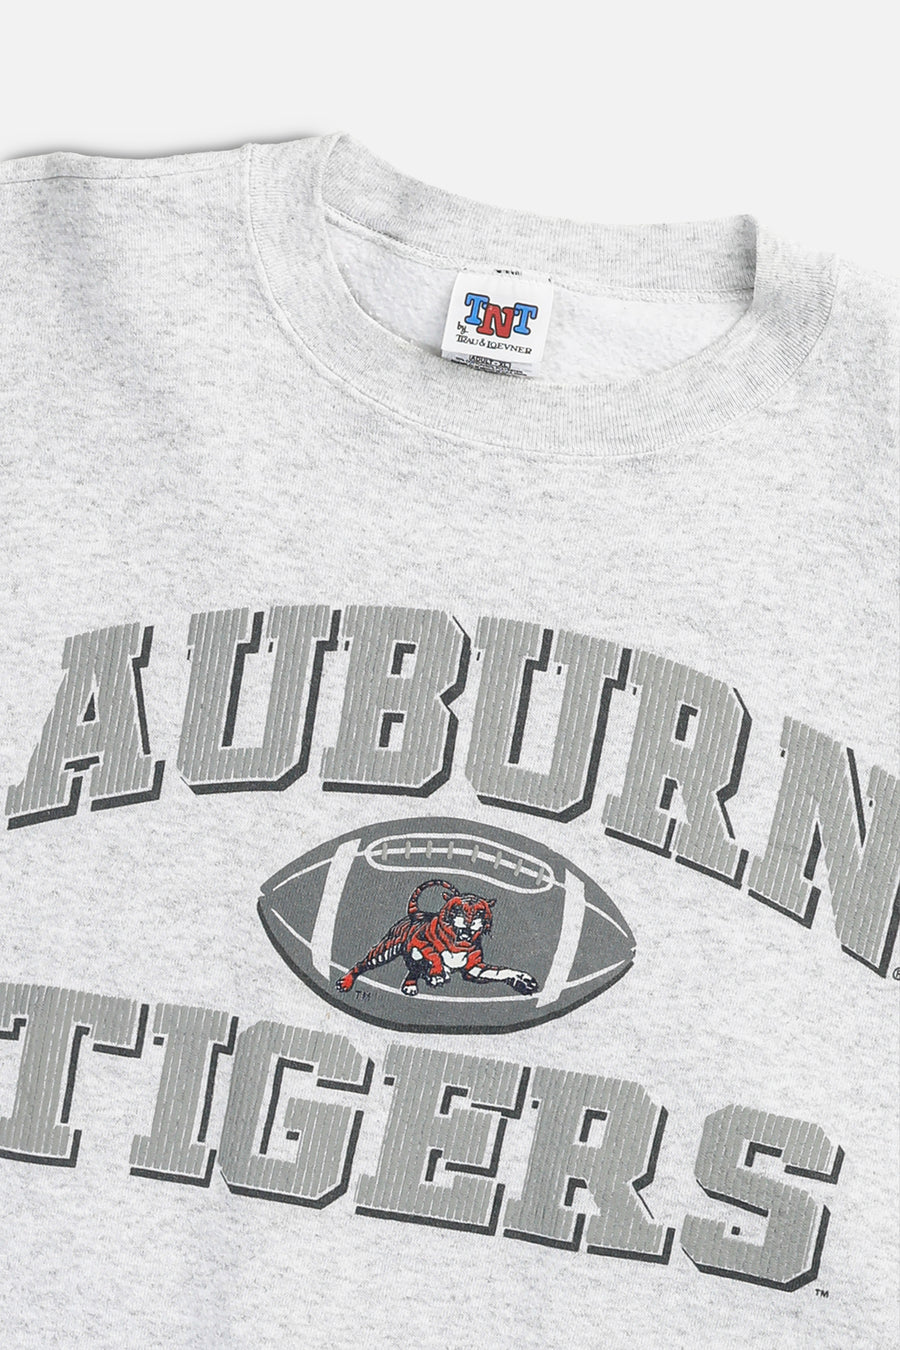 Vintage Auburn Tigers Sweatshirt - L